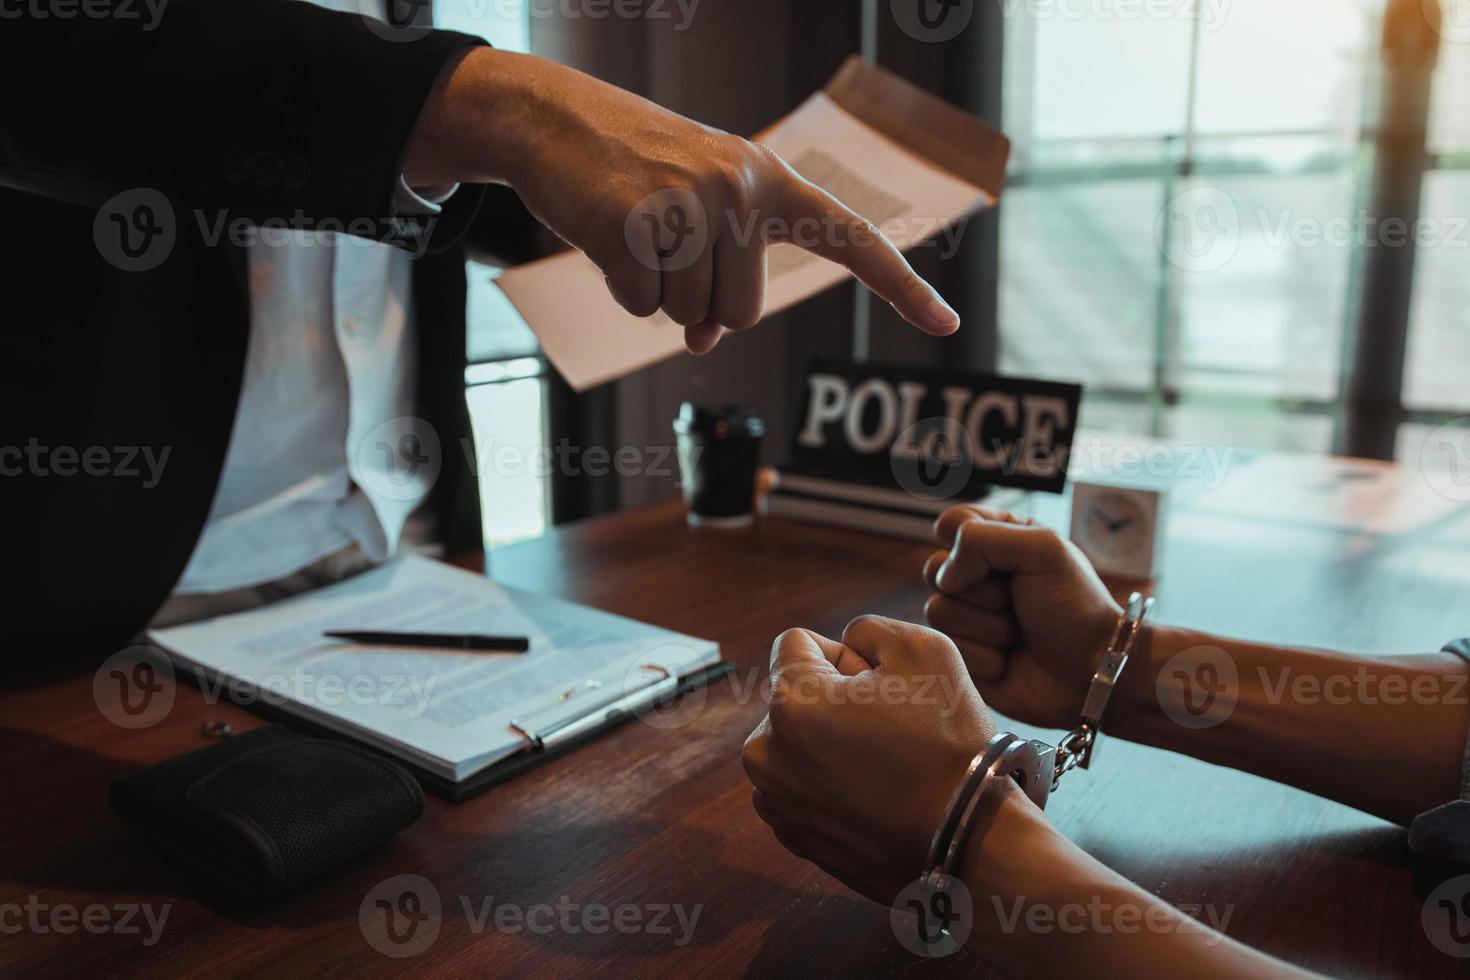 el oficial de policía señaló las esposas y sostuvo los documentos para arrestar al acusado en un caso de fraude. foto